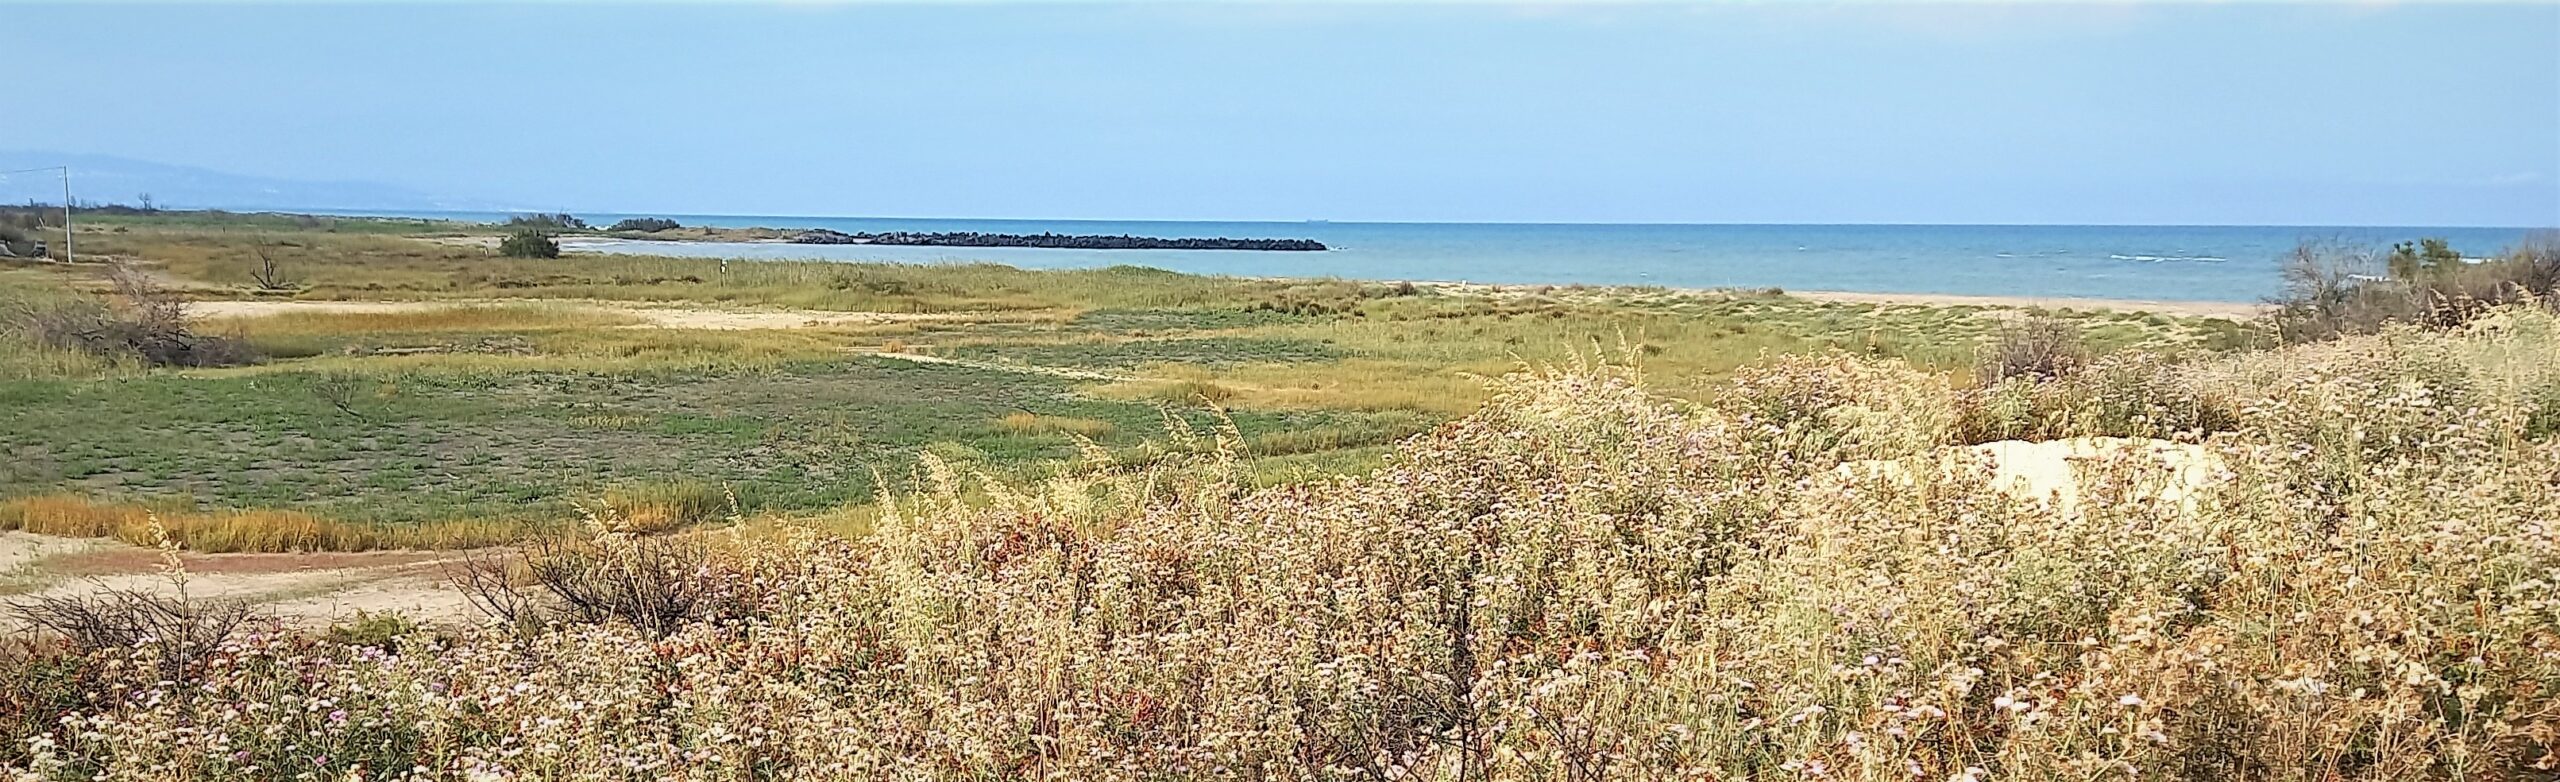 oasi della playa congiunzione simeto progetto rimboschimento 1mqdb rispetto pianeta imprints of peace